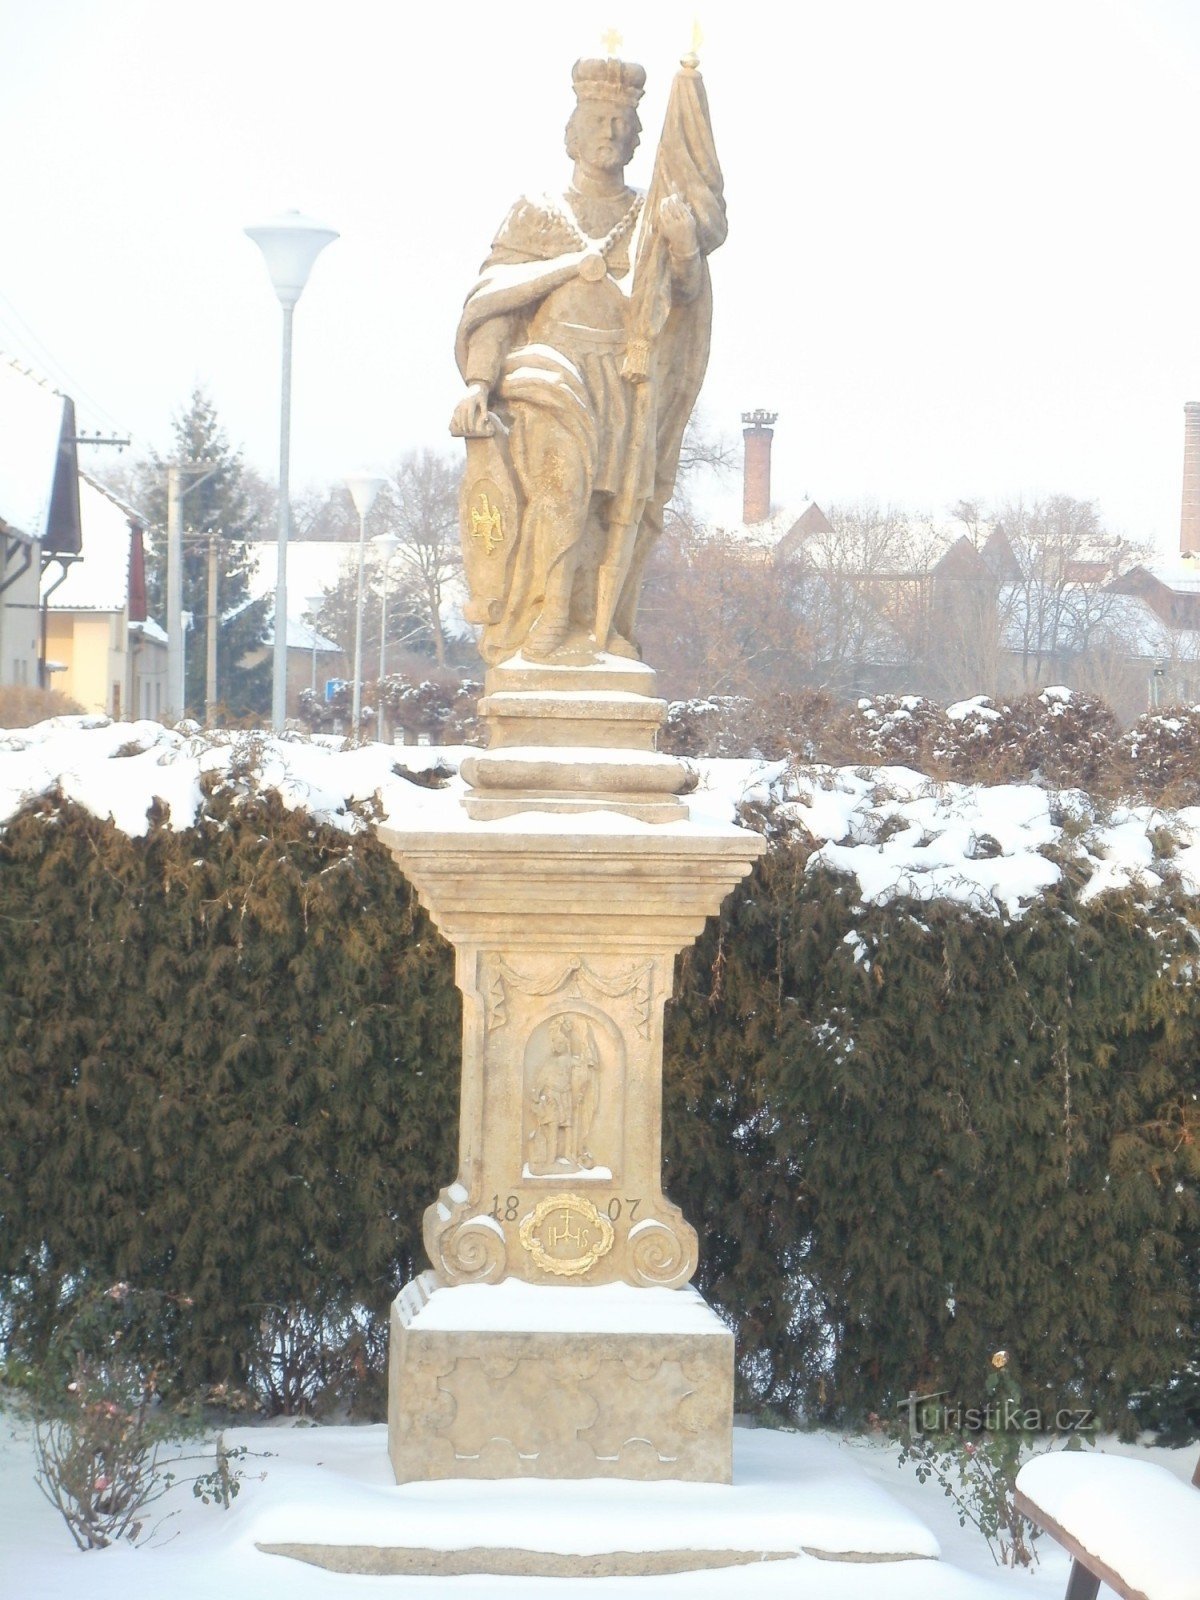 Chlumec nad Cidlinou - ein Denkmal mit einer Statue des hl. Wenzel